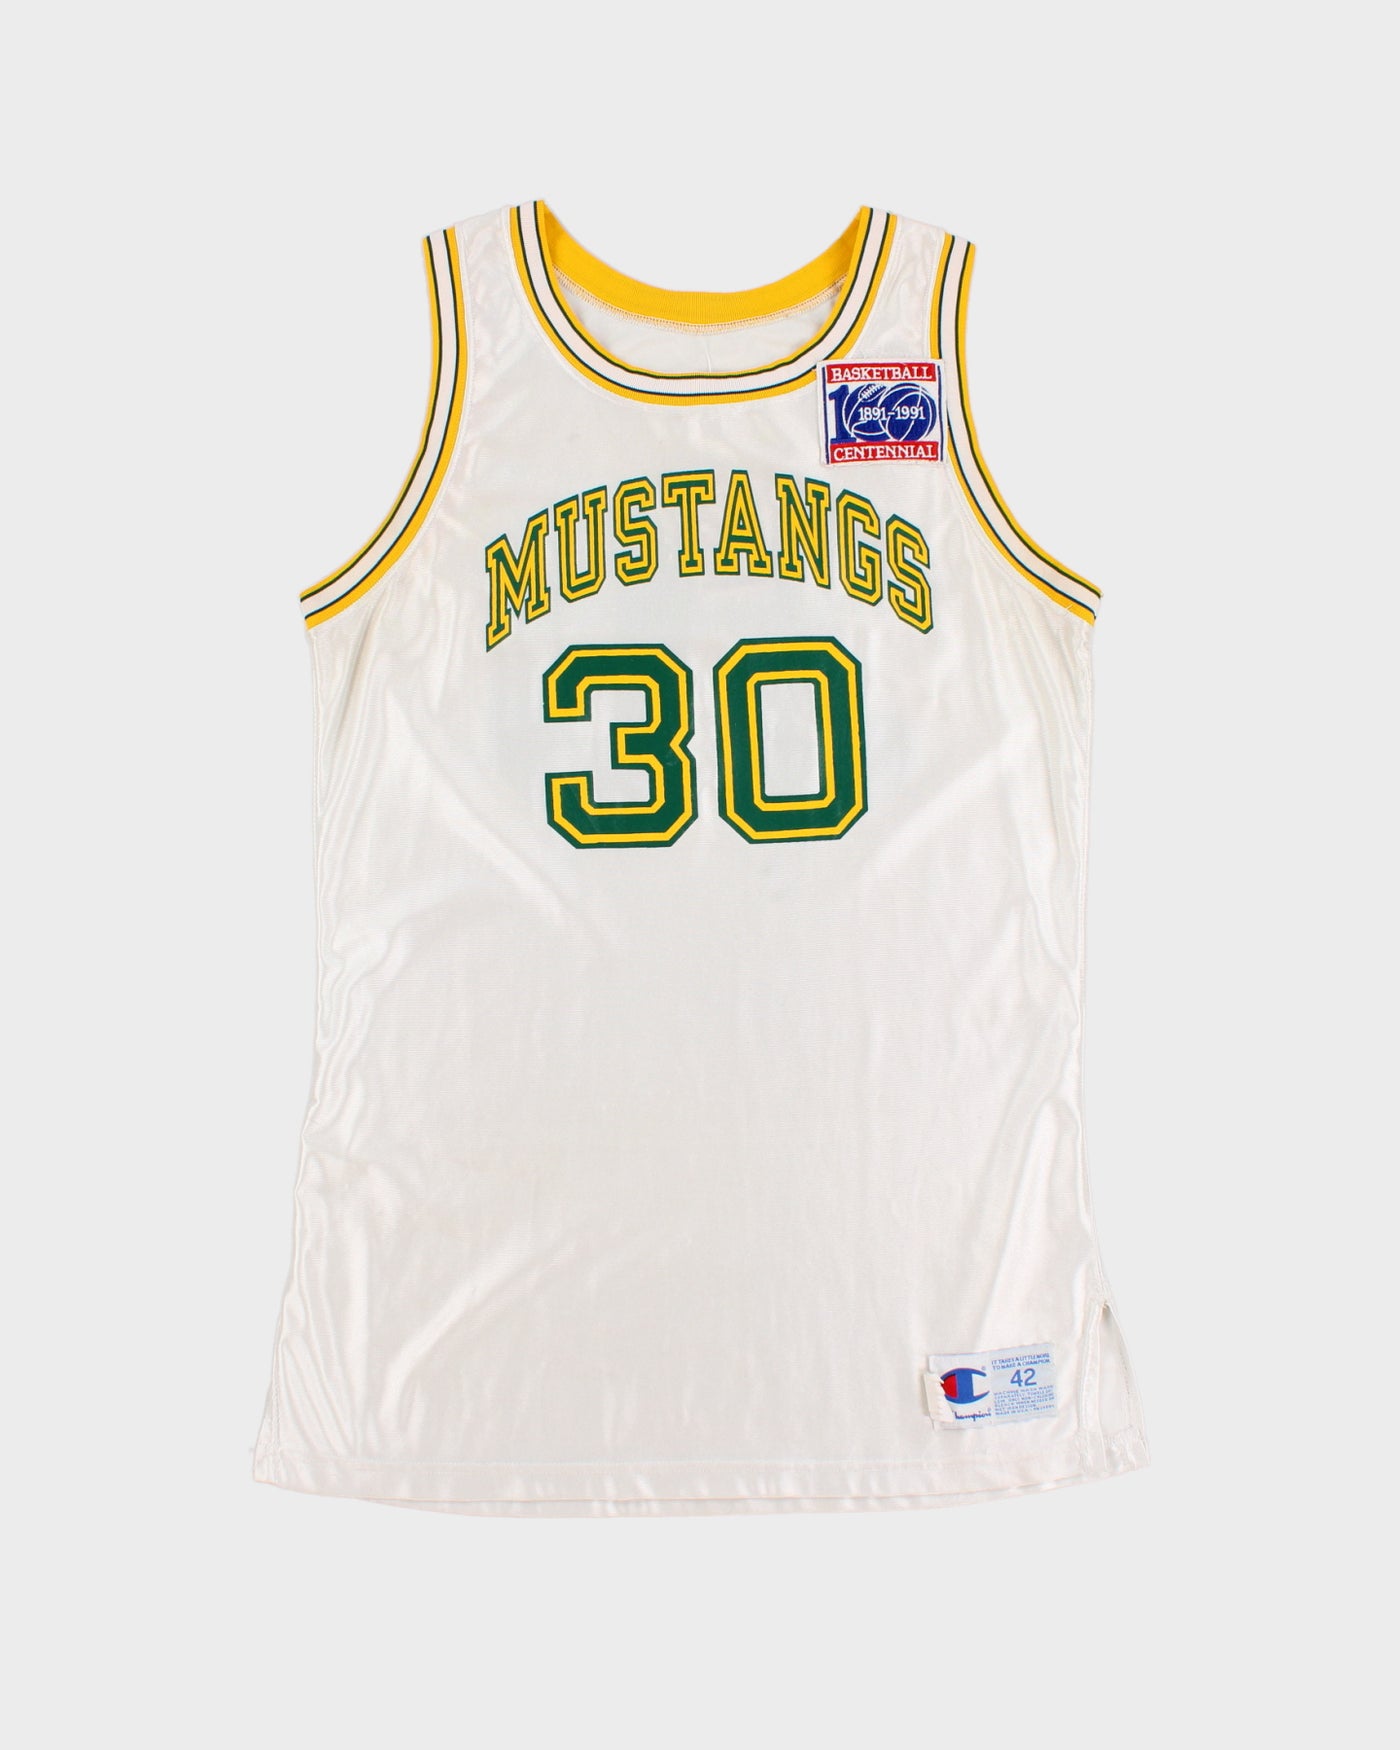 Champion Mustangs #30 Basketball Jersey - M